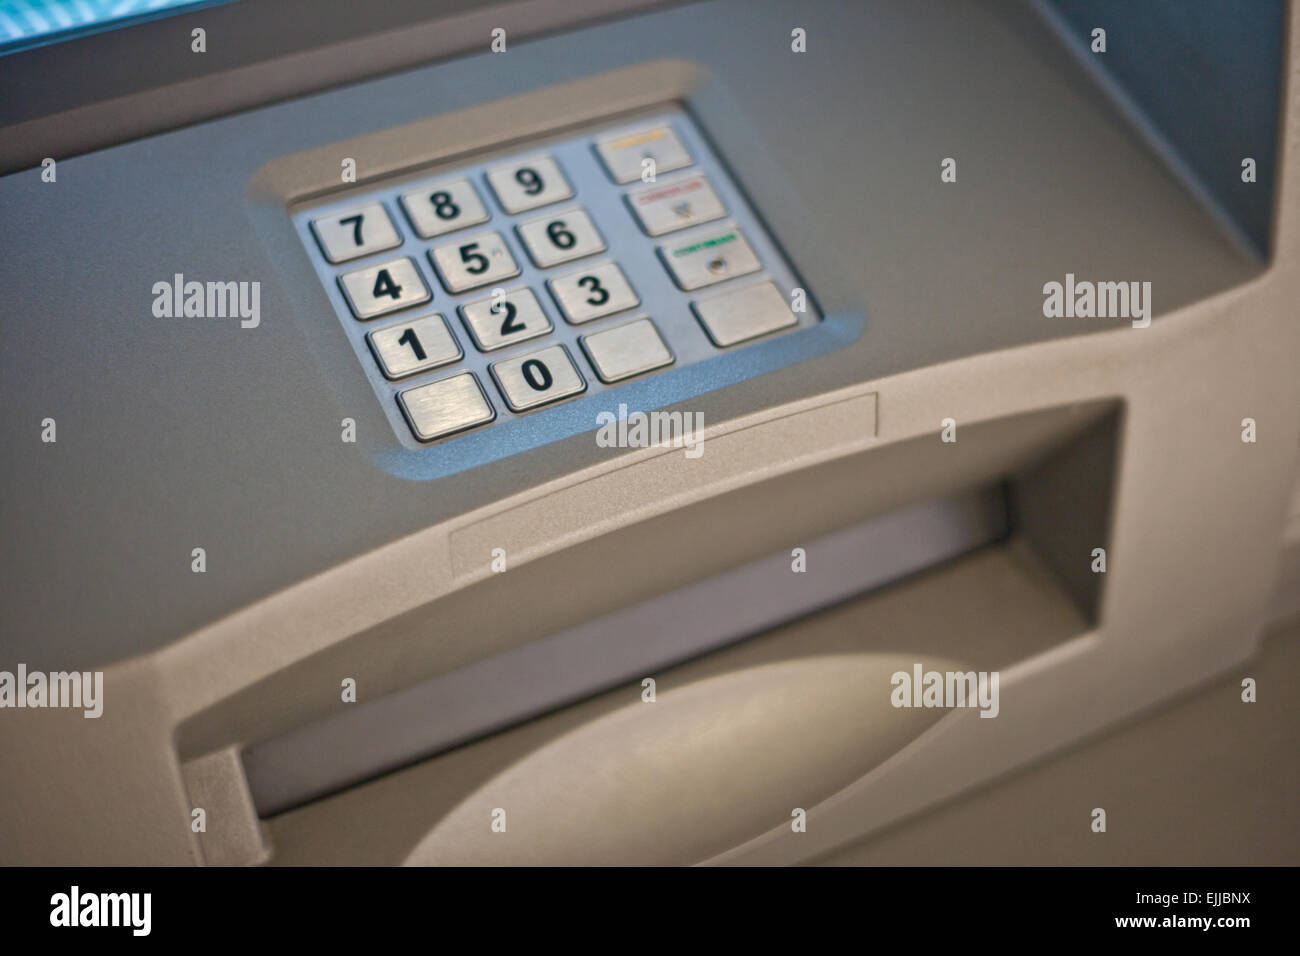 Graue und blaue Tastatur von einem Geldautomat Stockfoto